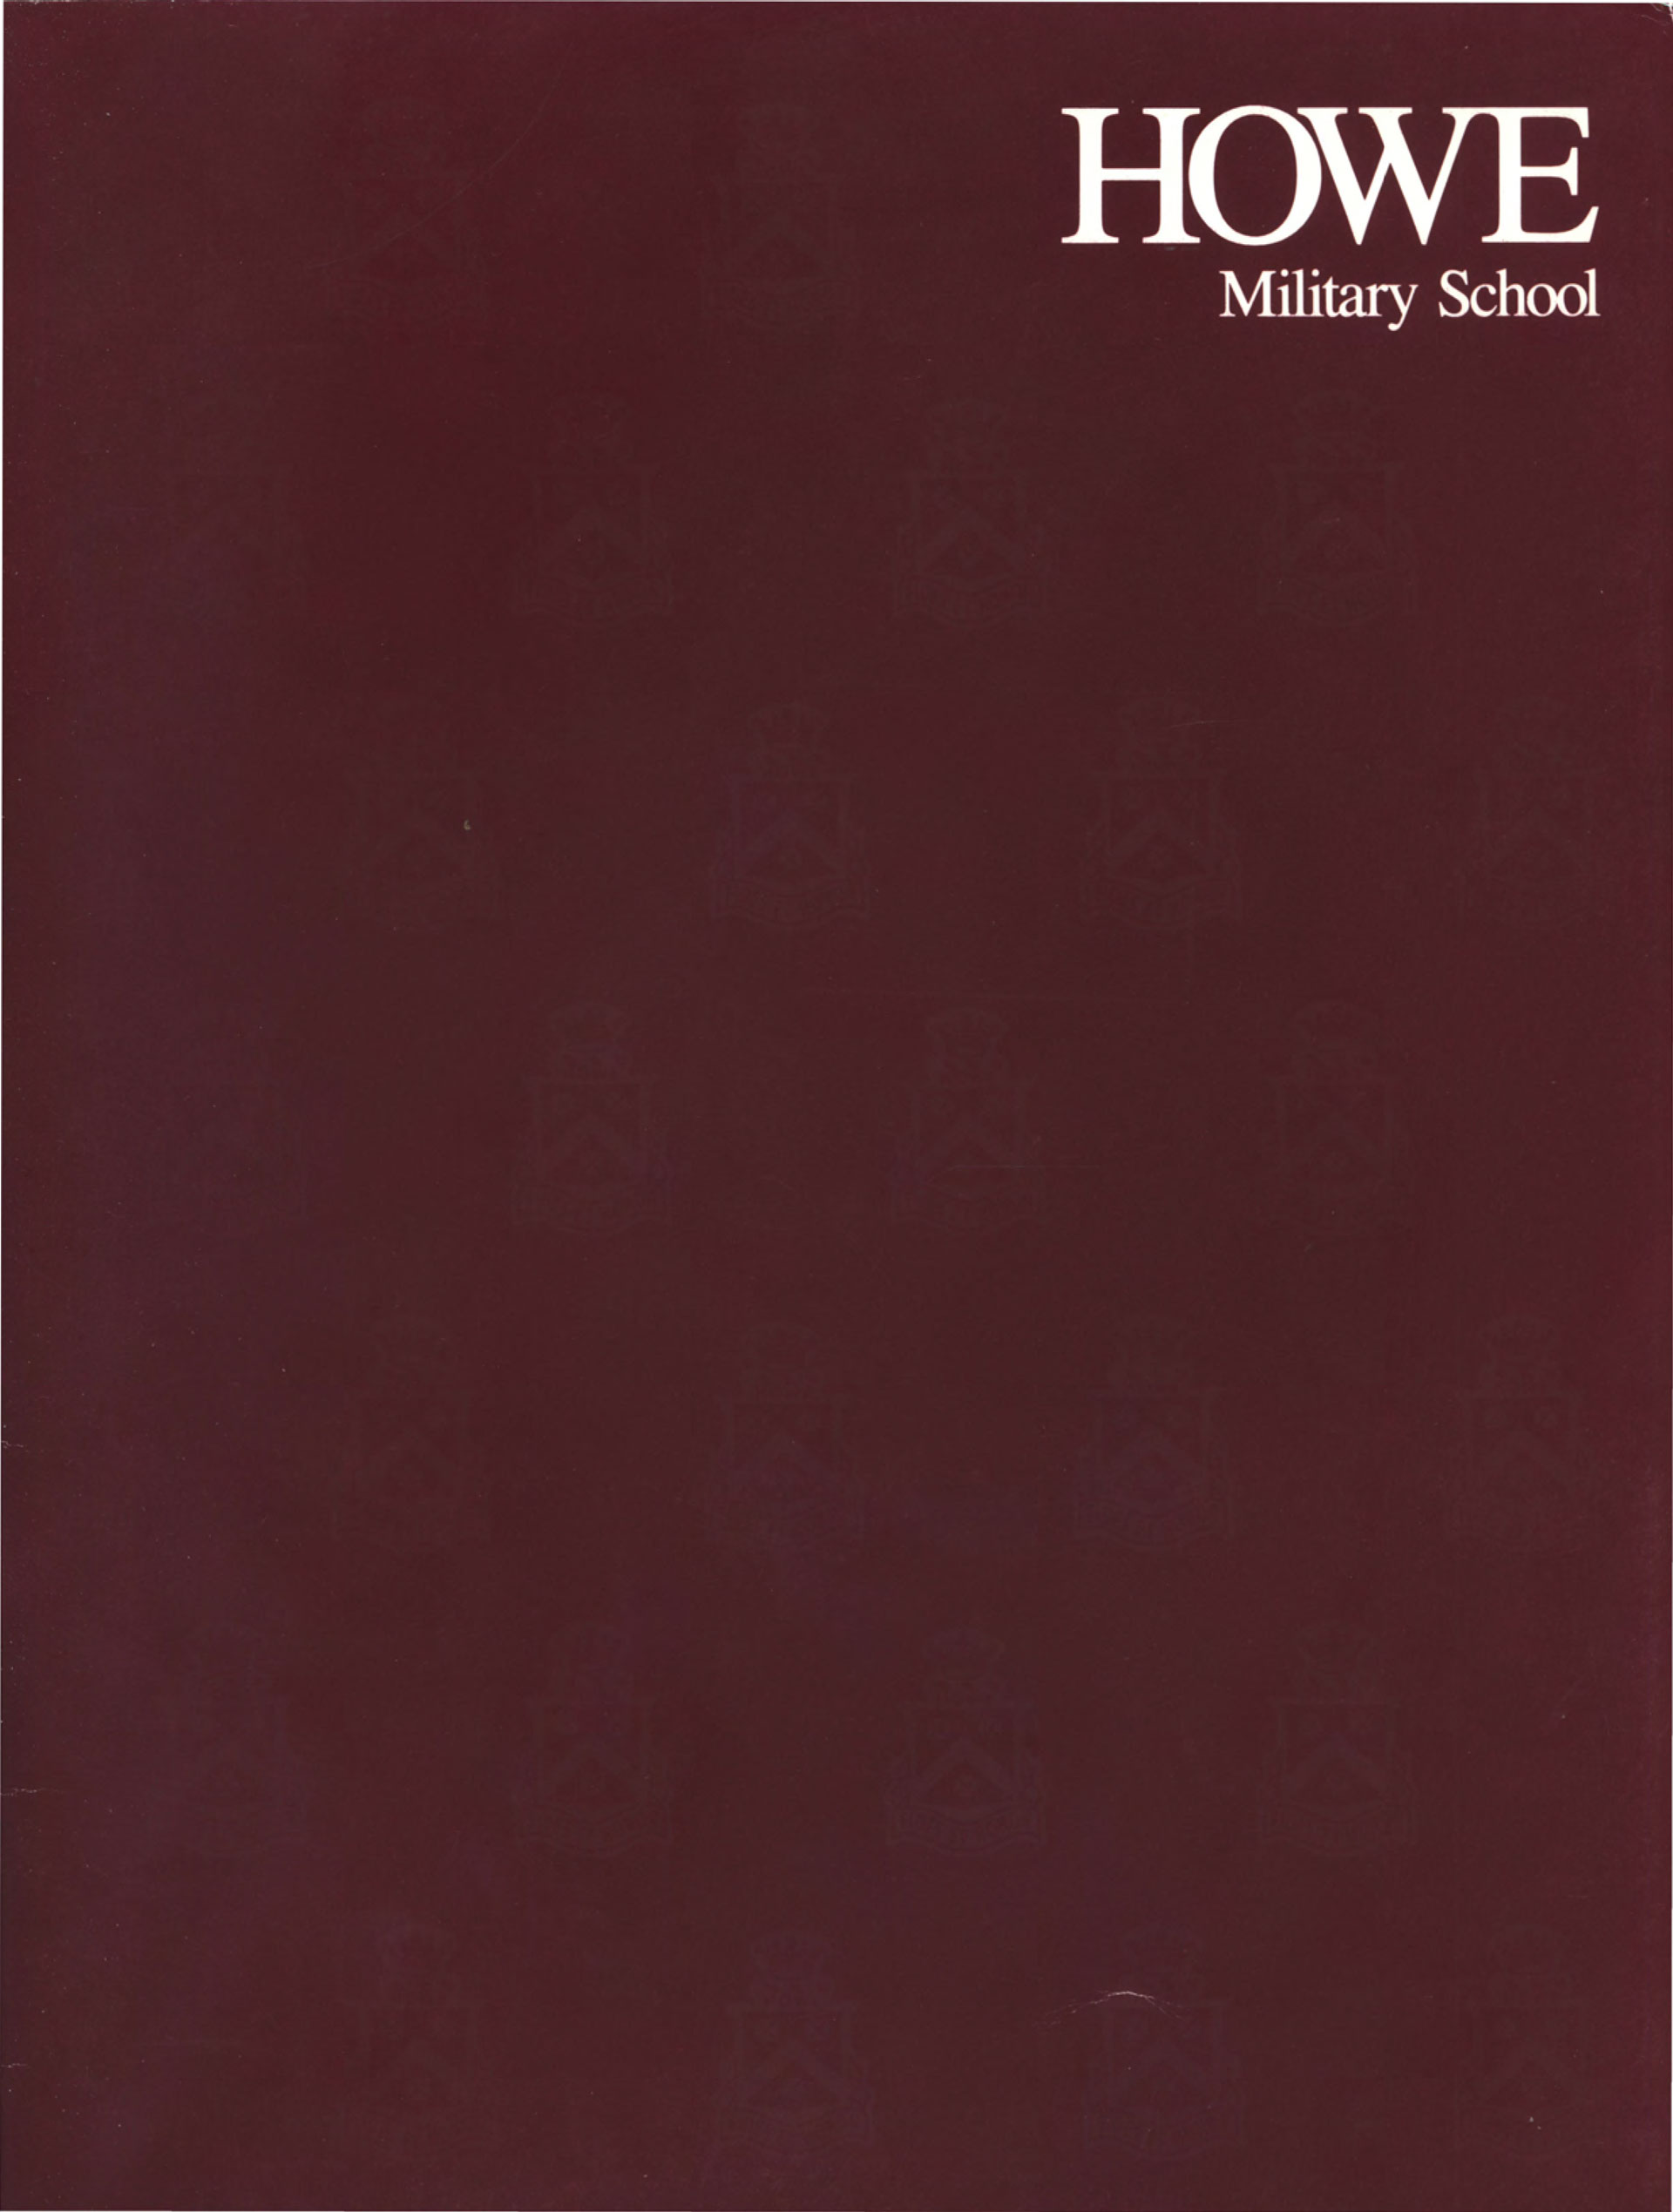 Howe Military School 1994